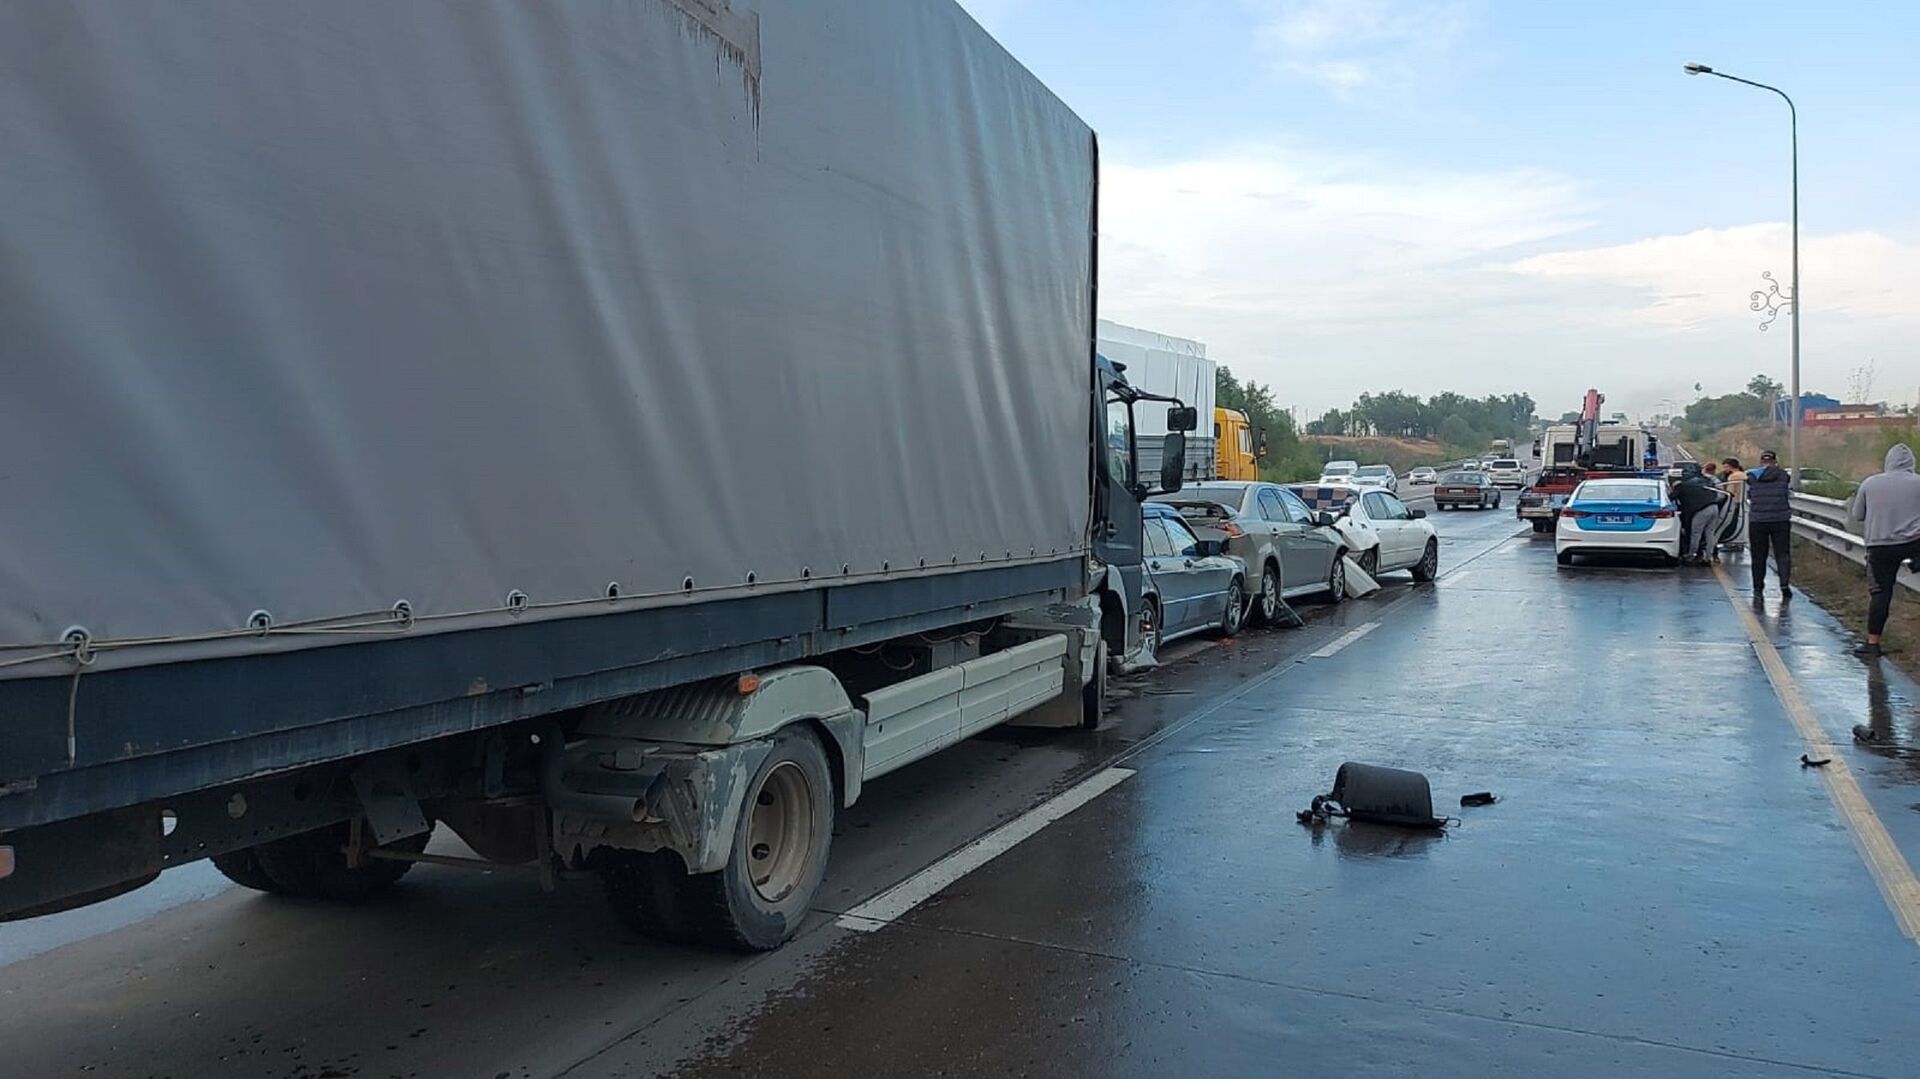 Двойное массовое ДТП произошло в Алматы: грузовик врезался в три стоявших авто - Sputnik Казахстан, 1920, 16.08.2021